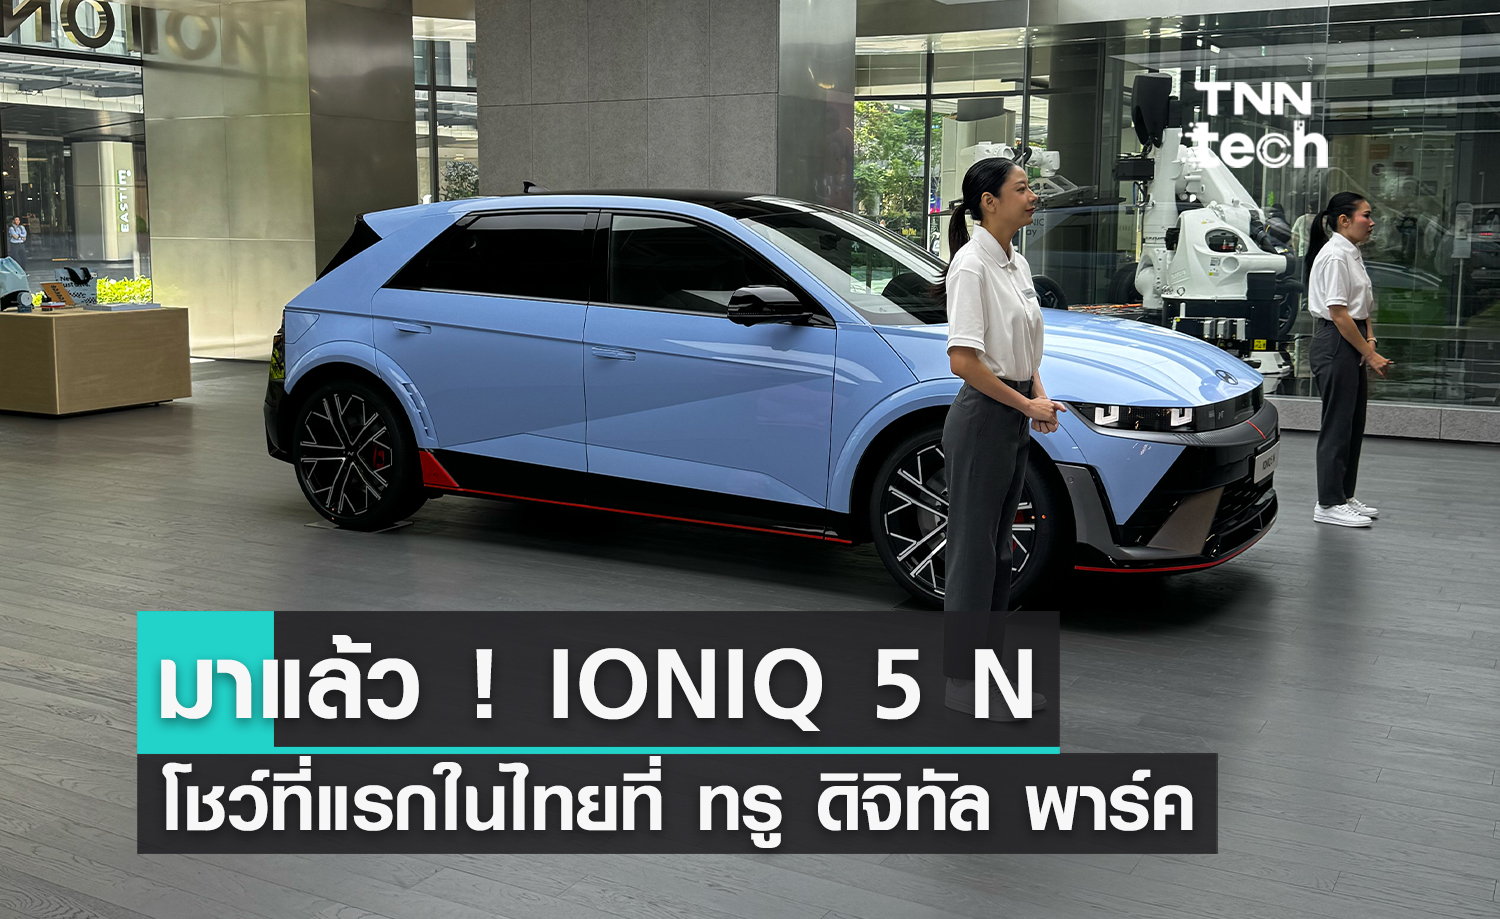 ฮุนได เปิดตัวศูนย์นวัตกรรม IONIQ Lab แห่งแรกในไทยที่ ทรู ดิจิทัล พาร์ค เดินหน้านวัตกรรมยานยนต์ไฟฟ้าที่ยั่งยืน